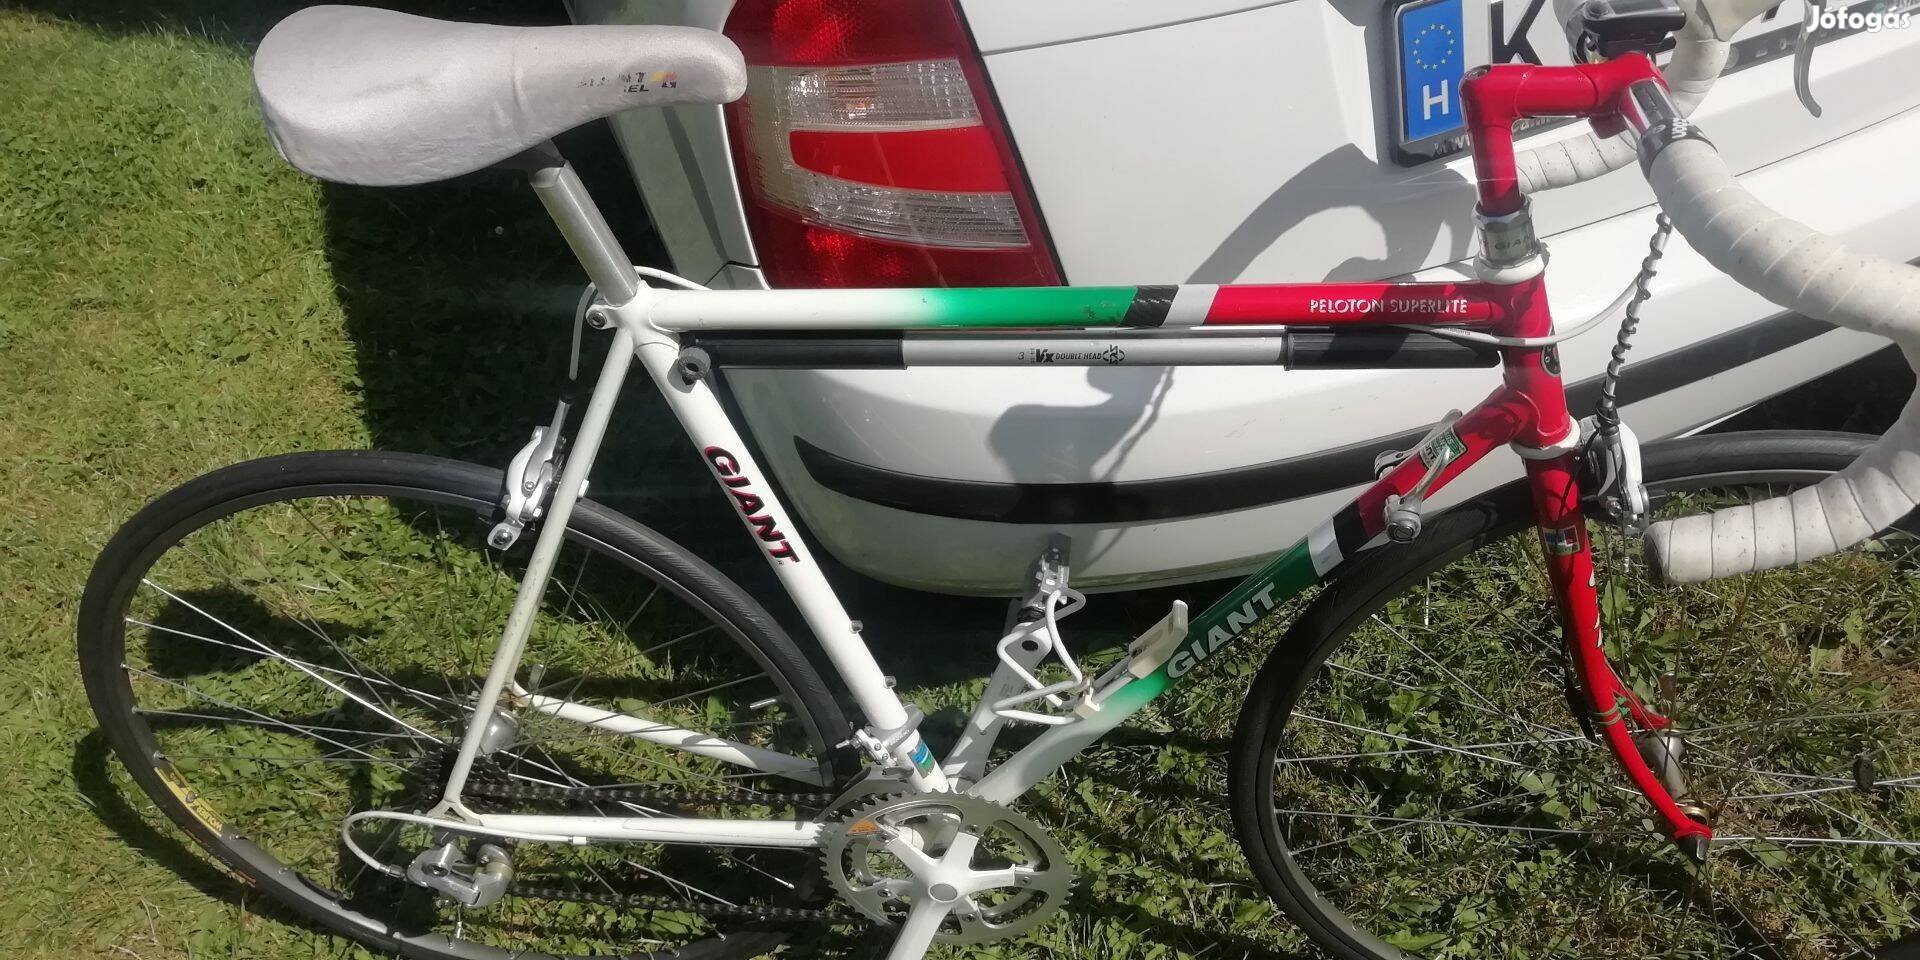 Giant peloton szuper lite országúti kerékpár újszerű állapotban eladó